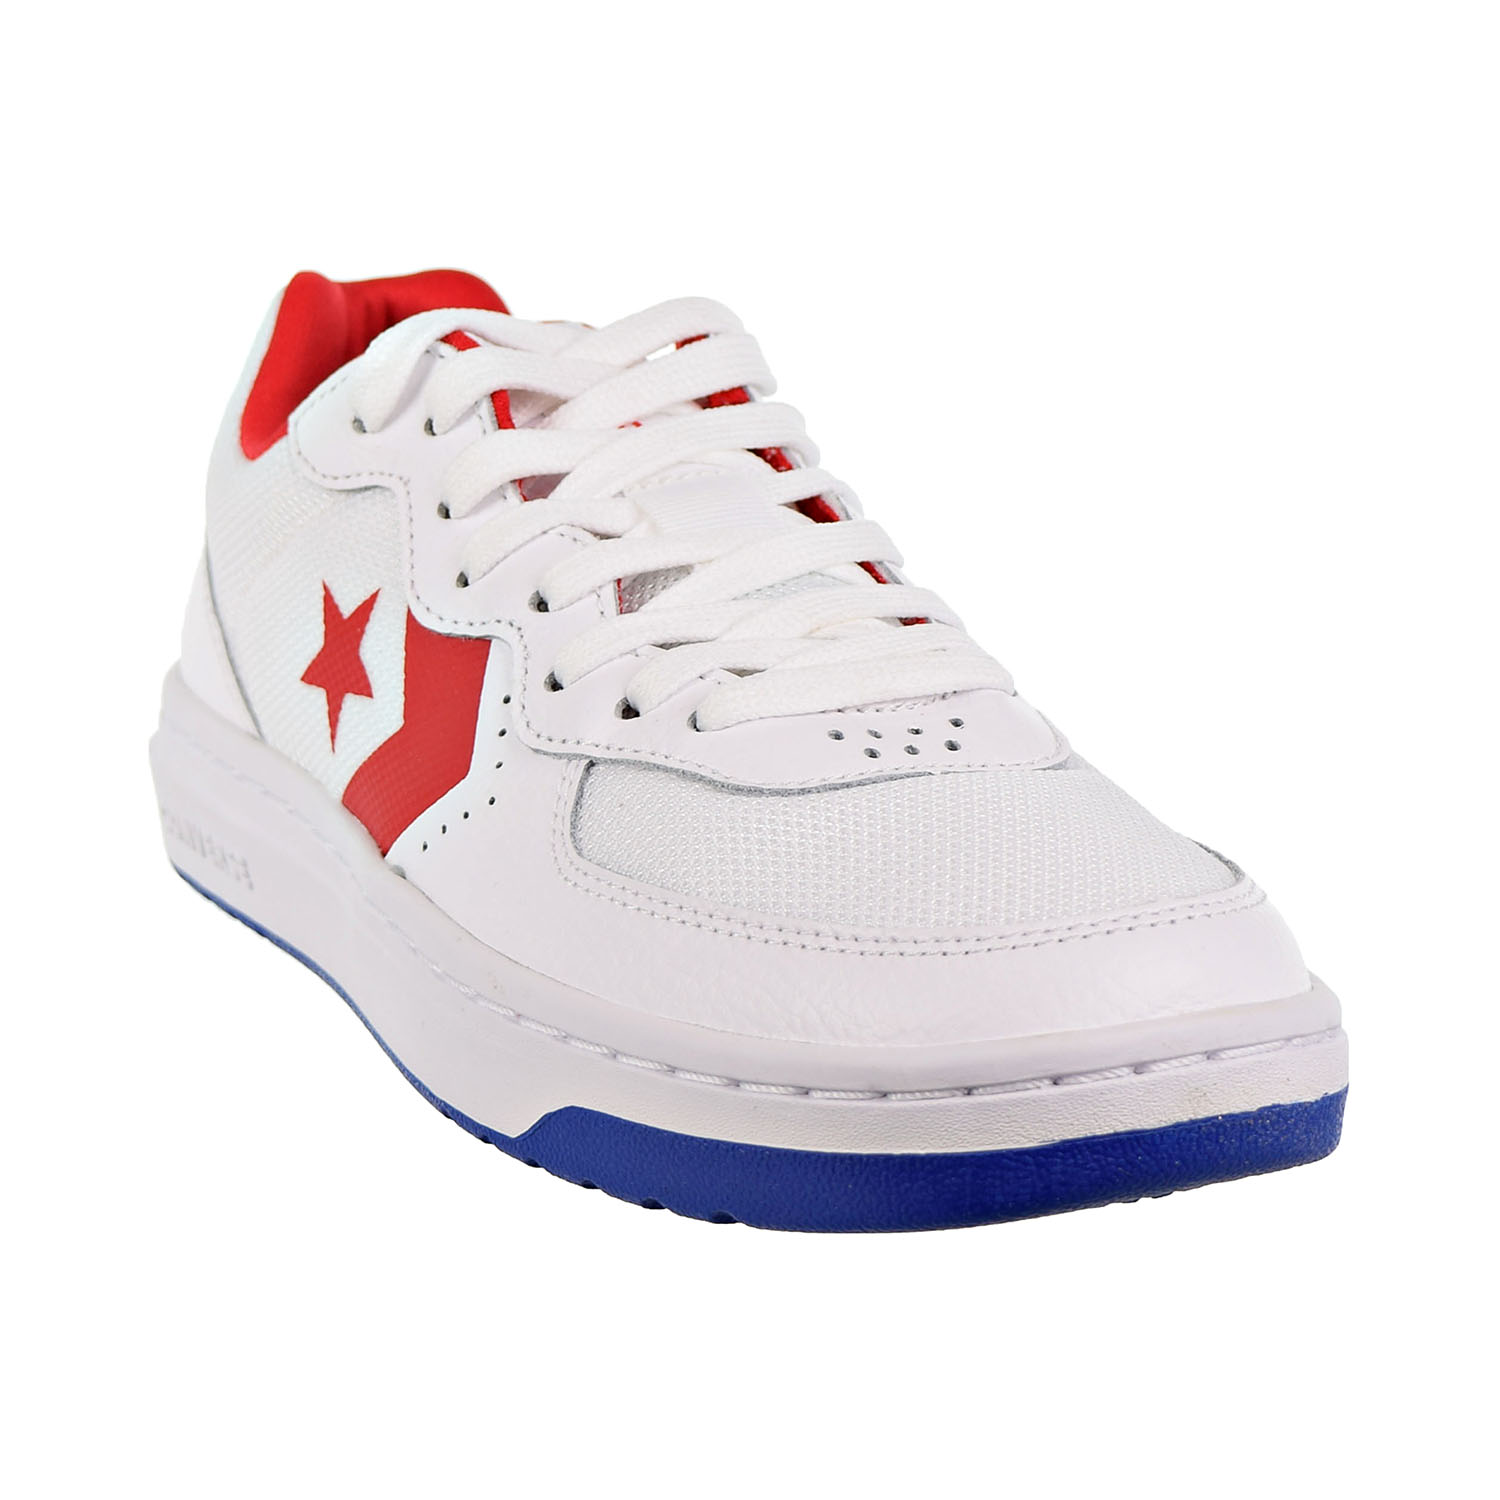 Converse Rival Ox Big Kids-Men's Shoes White-Enamel Red-Blue 163205C | eBay